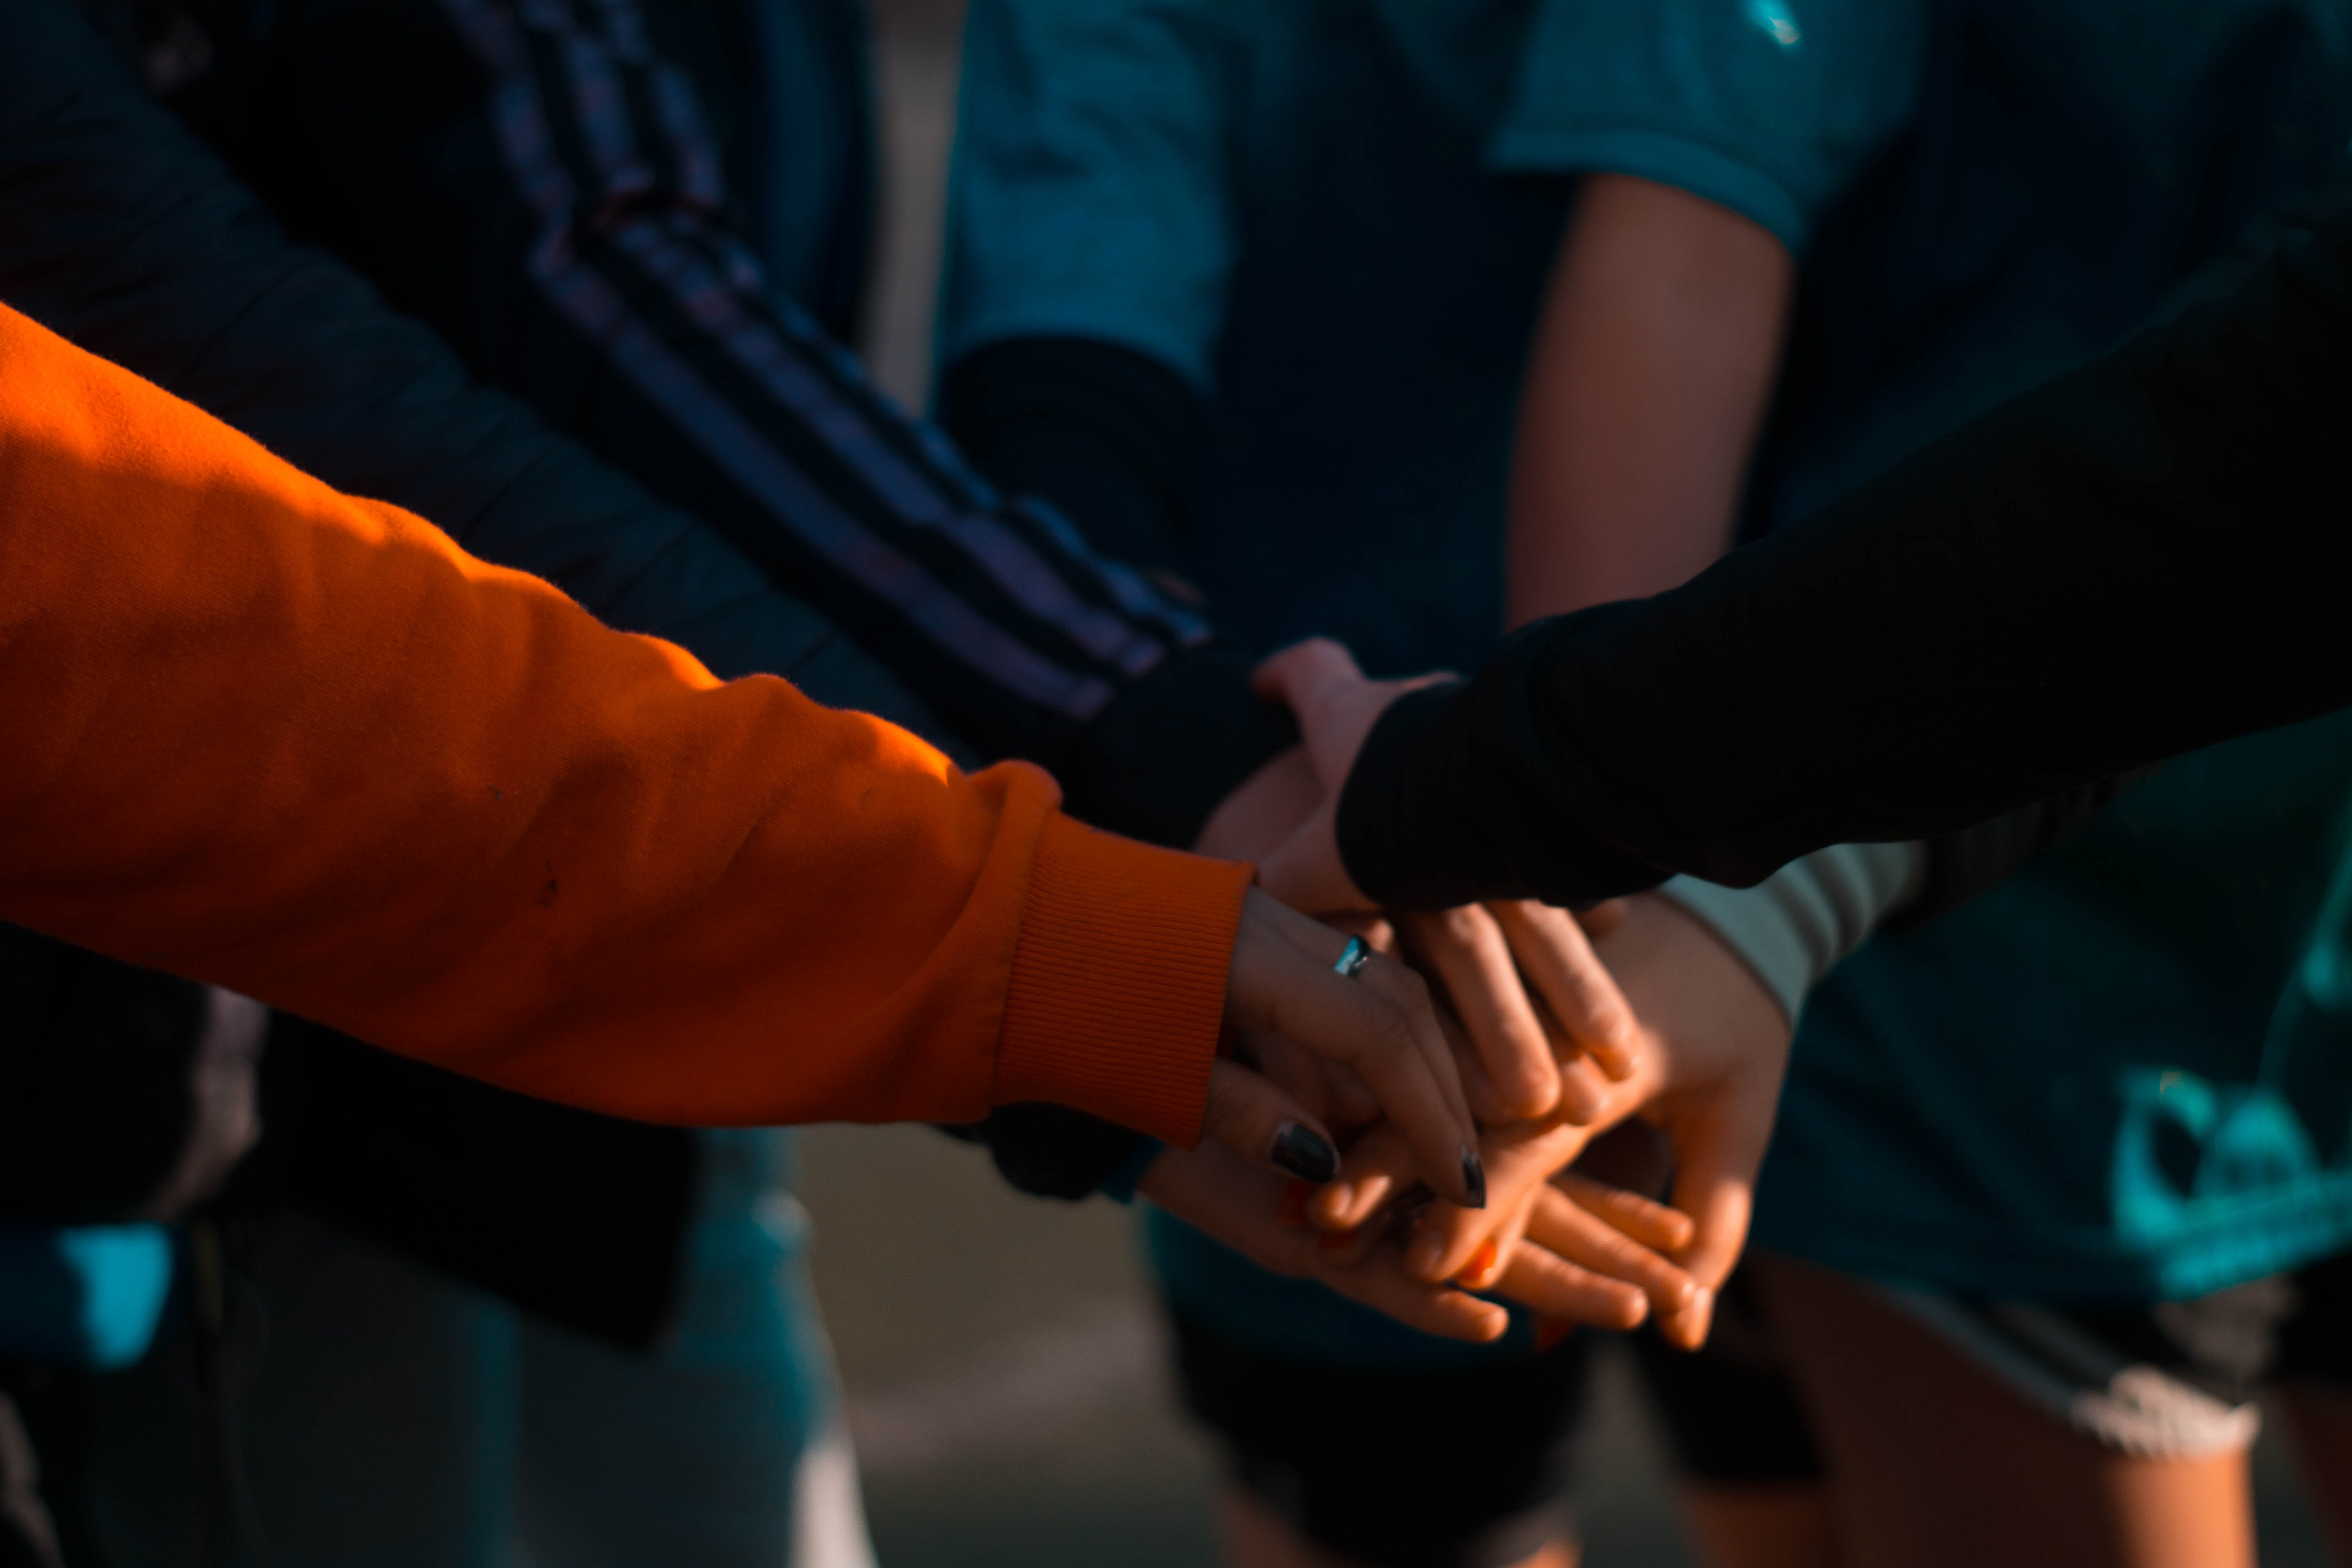 Gent juntant les mans. Font: Pexels - Mica Asato